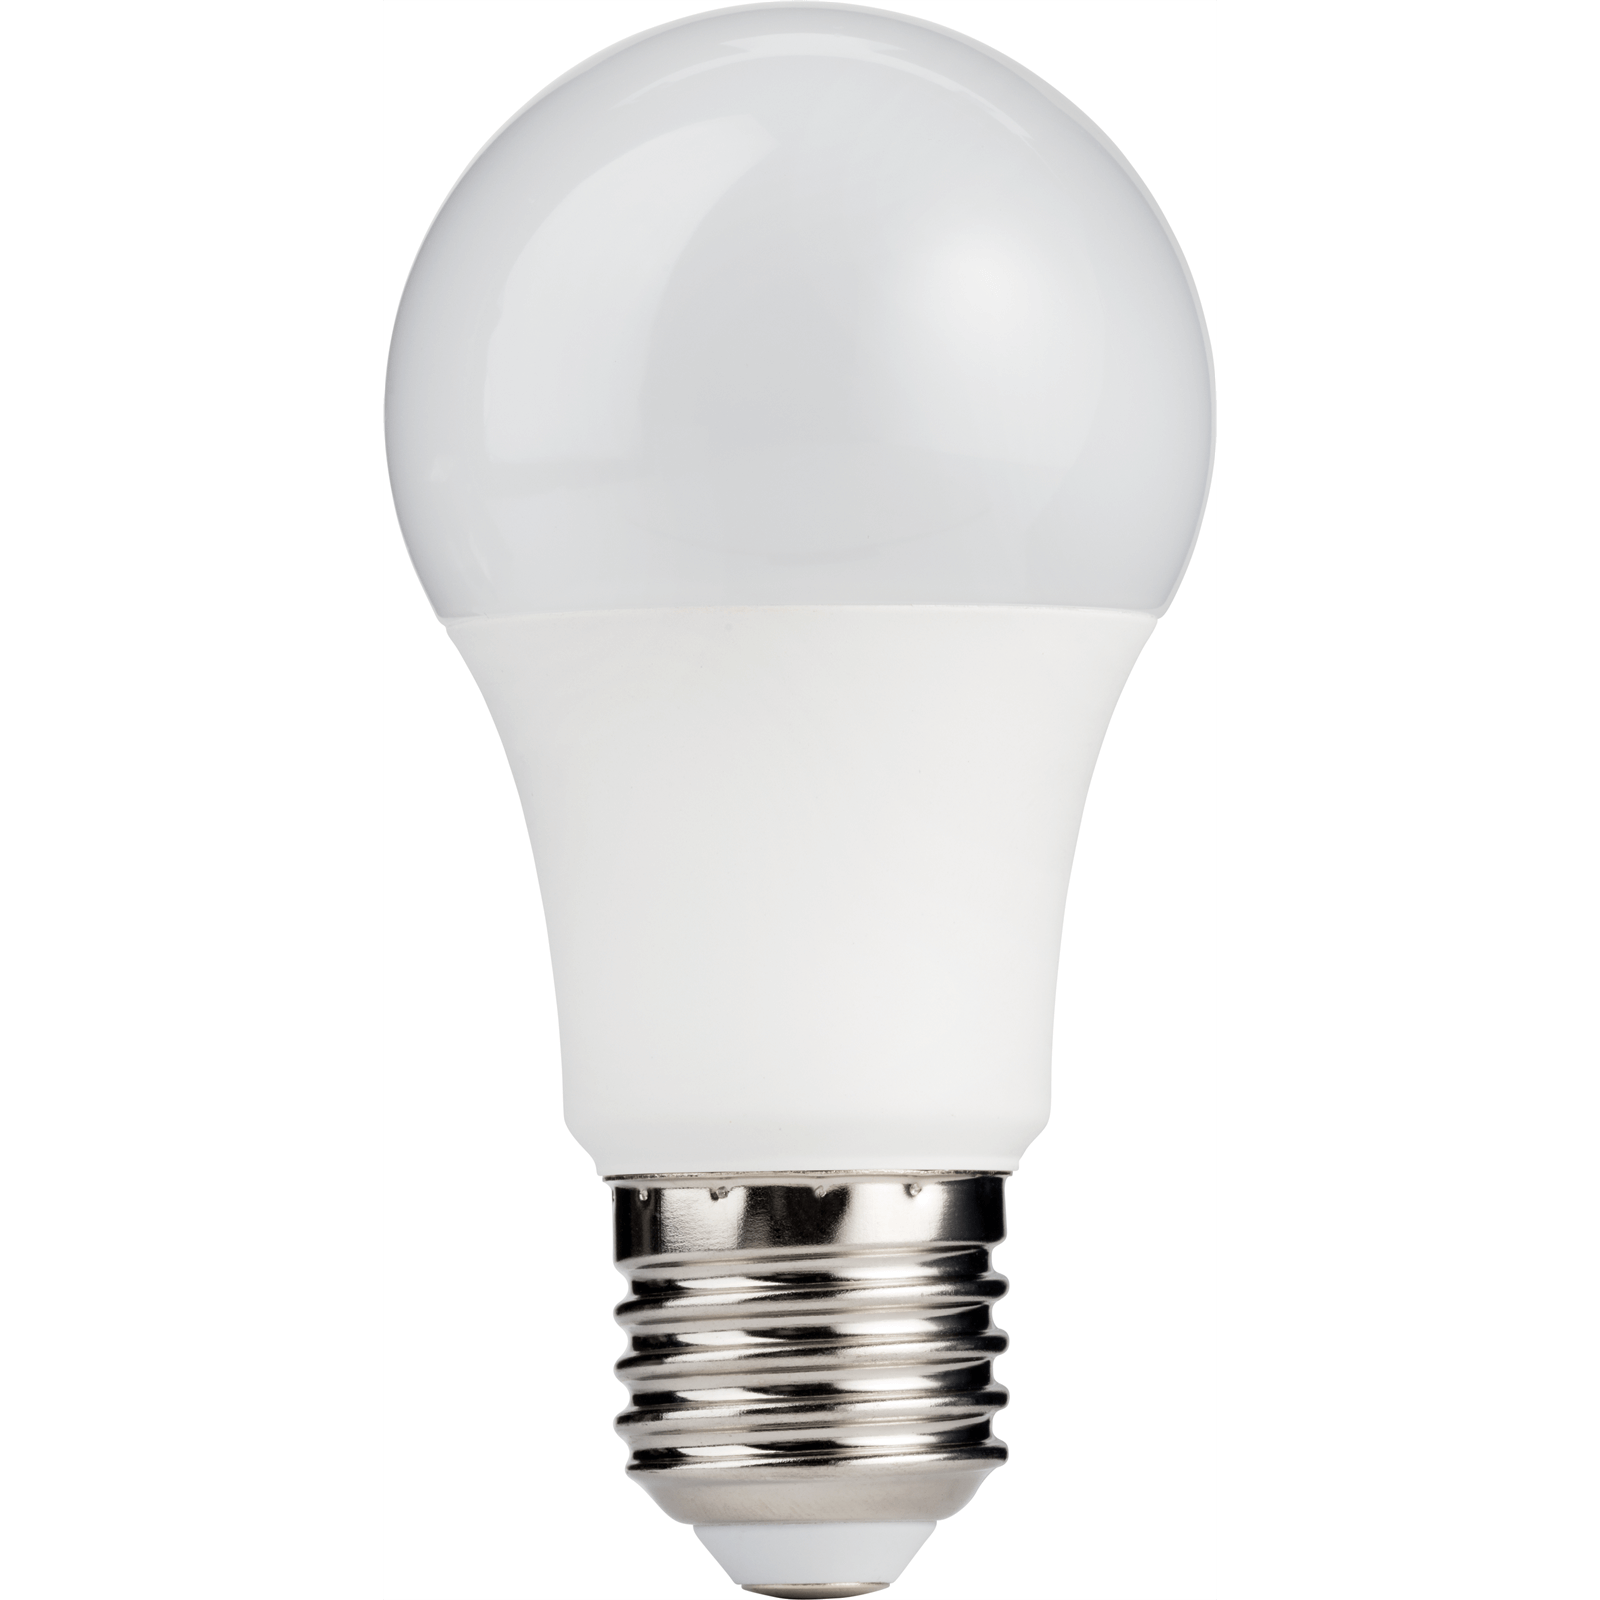 TCP LED Classic 100W ES Warm Light Bulb - 2 pack